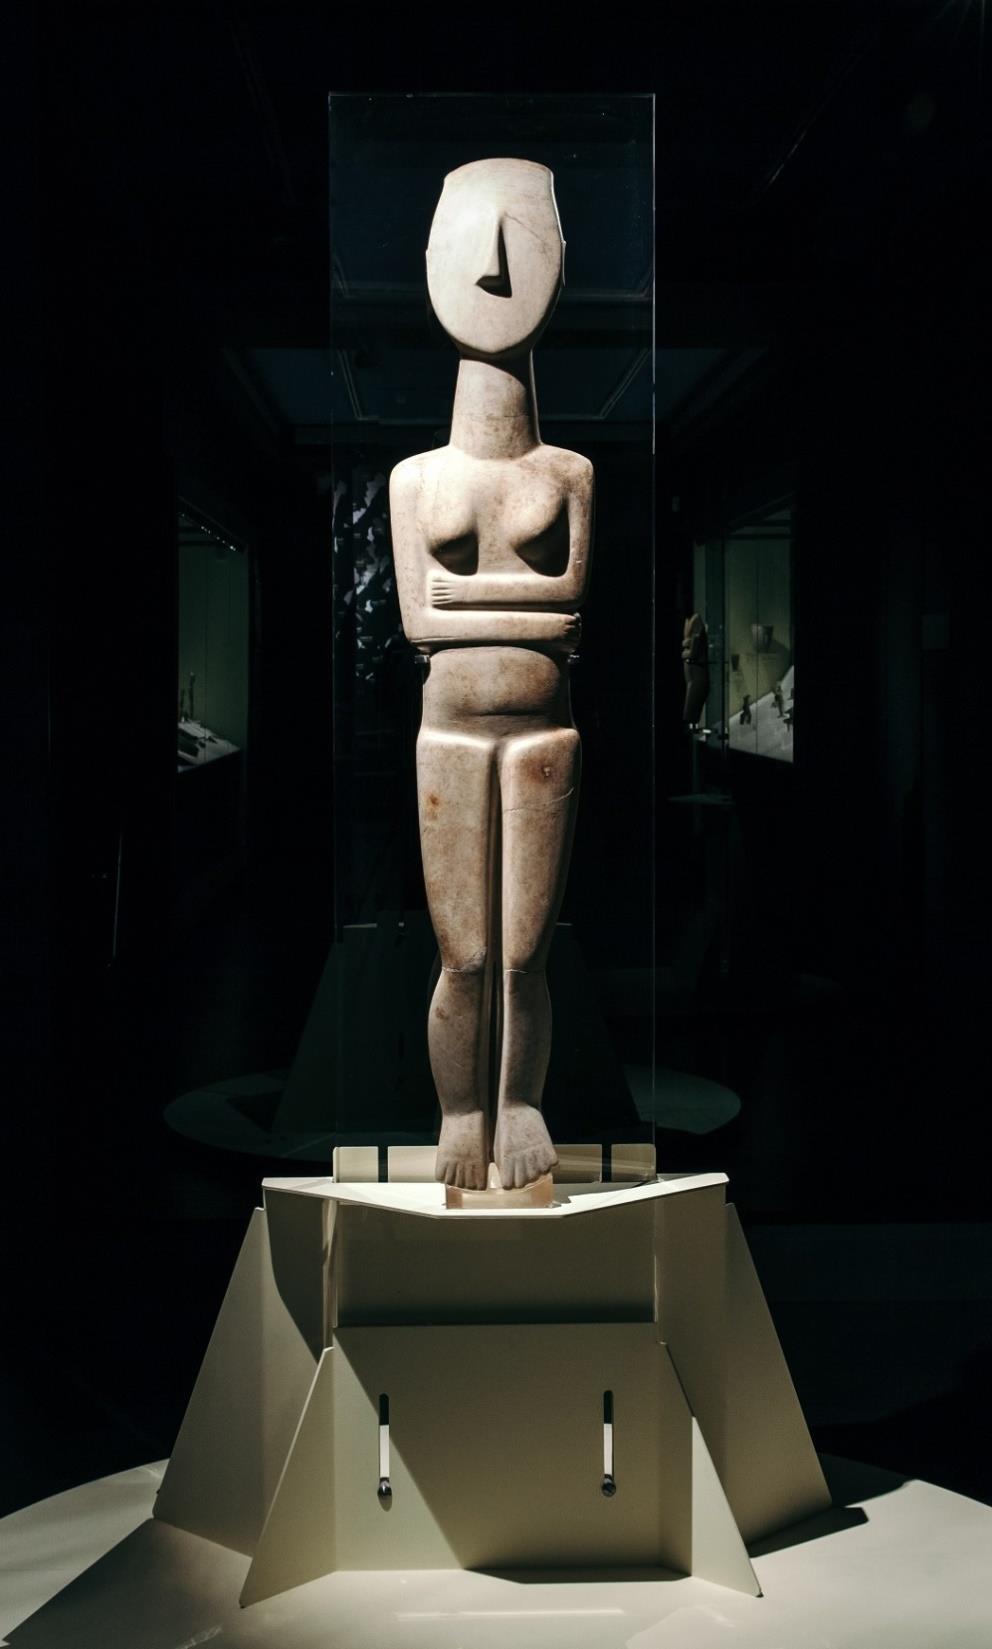 Γυναικείο άγαλμα από παριανό μάρμαρο, του τύπου με διπλωμένα χέρια κάτω από το στήθος. Aμοργός, Πρωτοκυκλαδική II Εποχή (φάση Kέρου-Σύρου, 2800-2300 π.x.